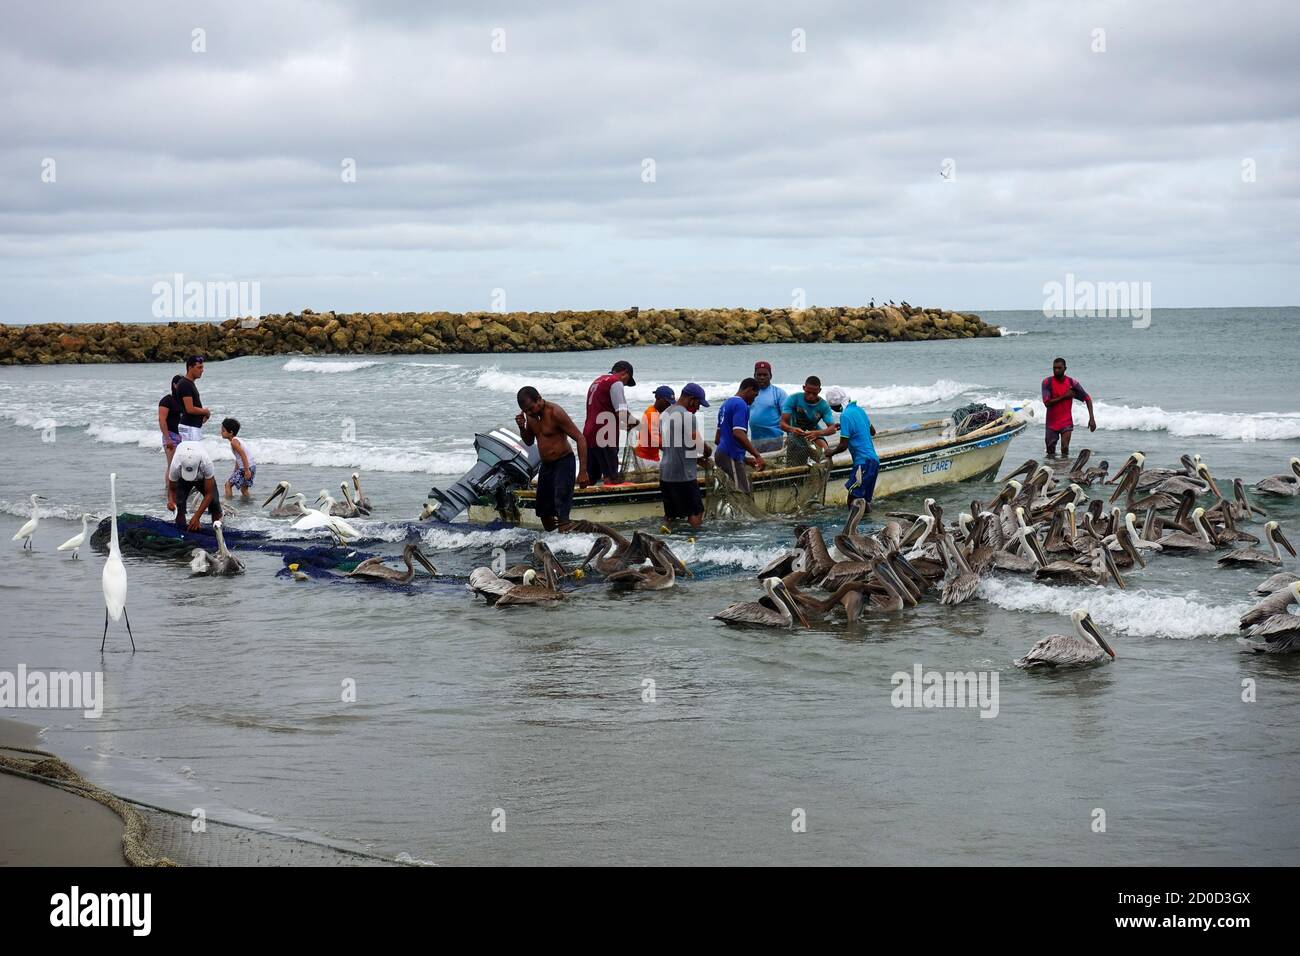 Cartagena, Bolívar/Colombia; 09/30/2020: Pescatore che porta le reti nella spiaggia di Bocagrande. Uomini che lavorano nella pesca artigianale seguiti dal pellicano 2020 Foto Stock